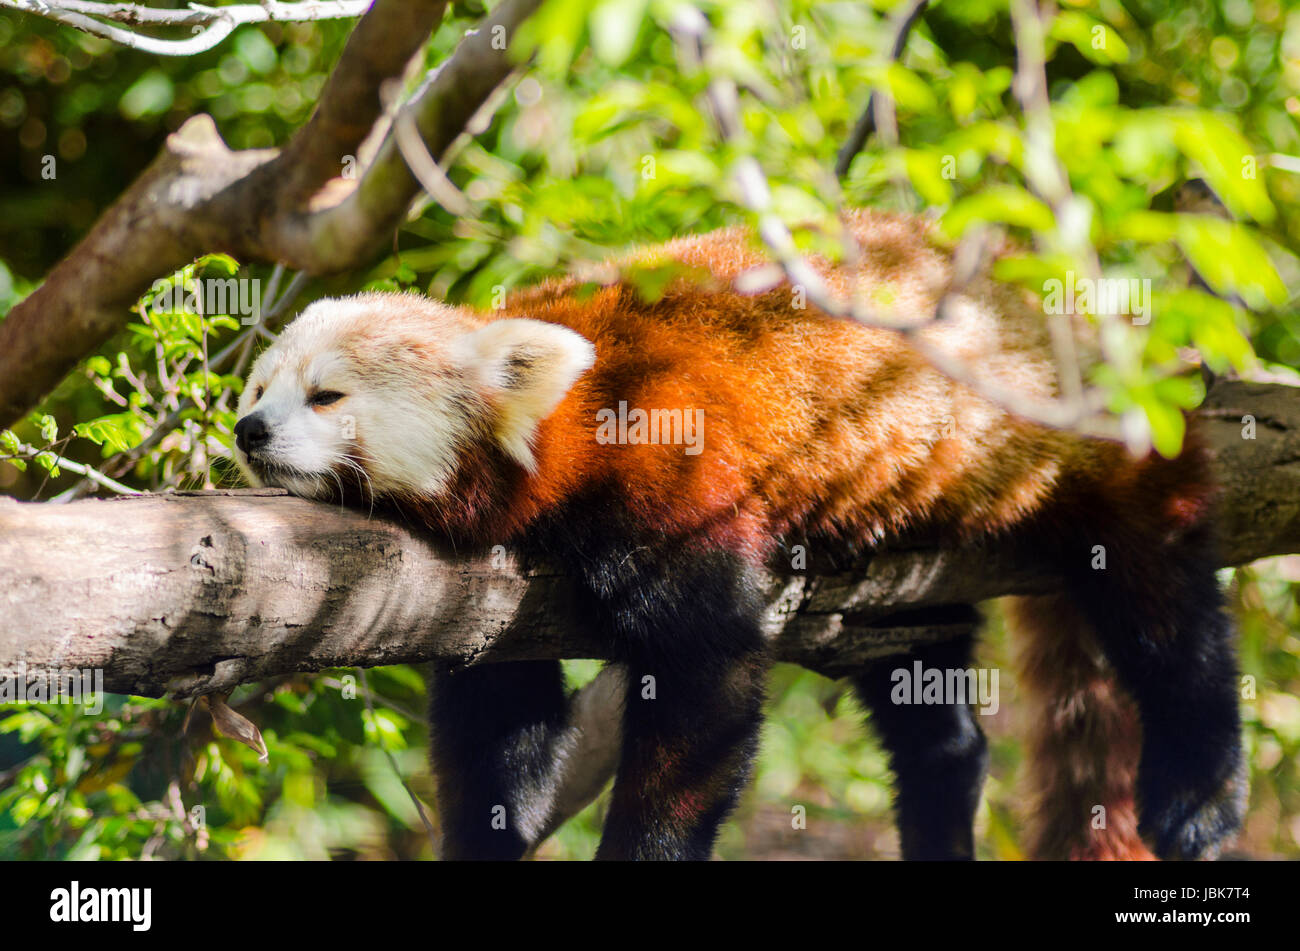 Ein schöner roter Panda liegend auf einem Baum Ast schlafen ausgestreckt mit seinen Beinen hängend nach unten baumeln. Der rote Katze Bär hat eine weiße Maske und rot braunen Mantel und heißt Hun ho in der chinesischen Bedeutung Fuchs Feuer. Stockfoto